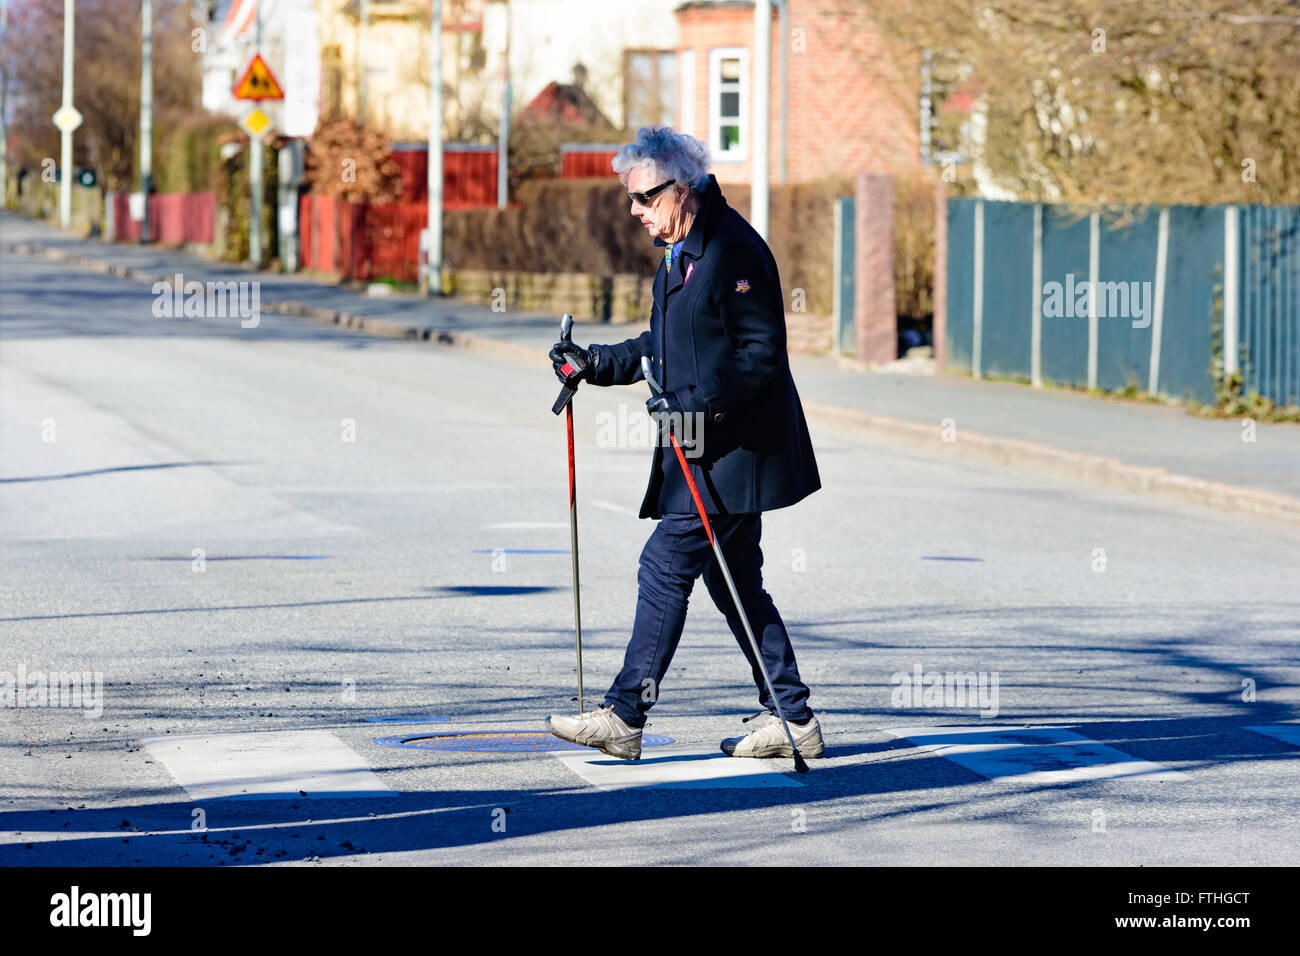 L'ahus, Suède - 20 mars 2016 : Senior woman out marcher avec les bâtons de marche. Elle est traversée d'une rue. Pas de voitures visibles. Peo réel Banque D'Images